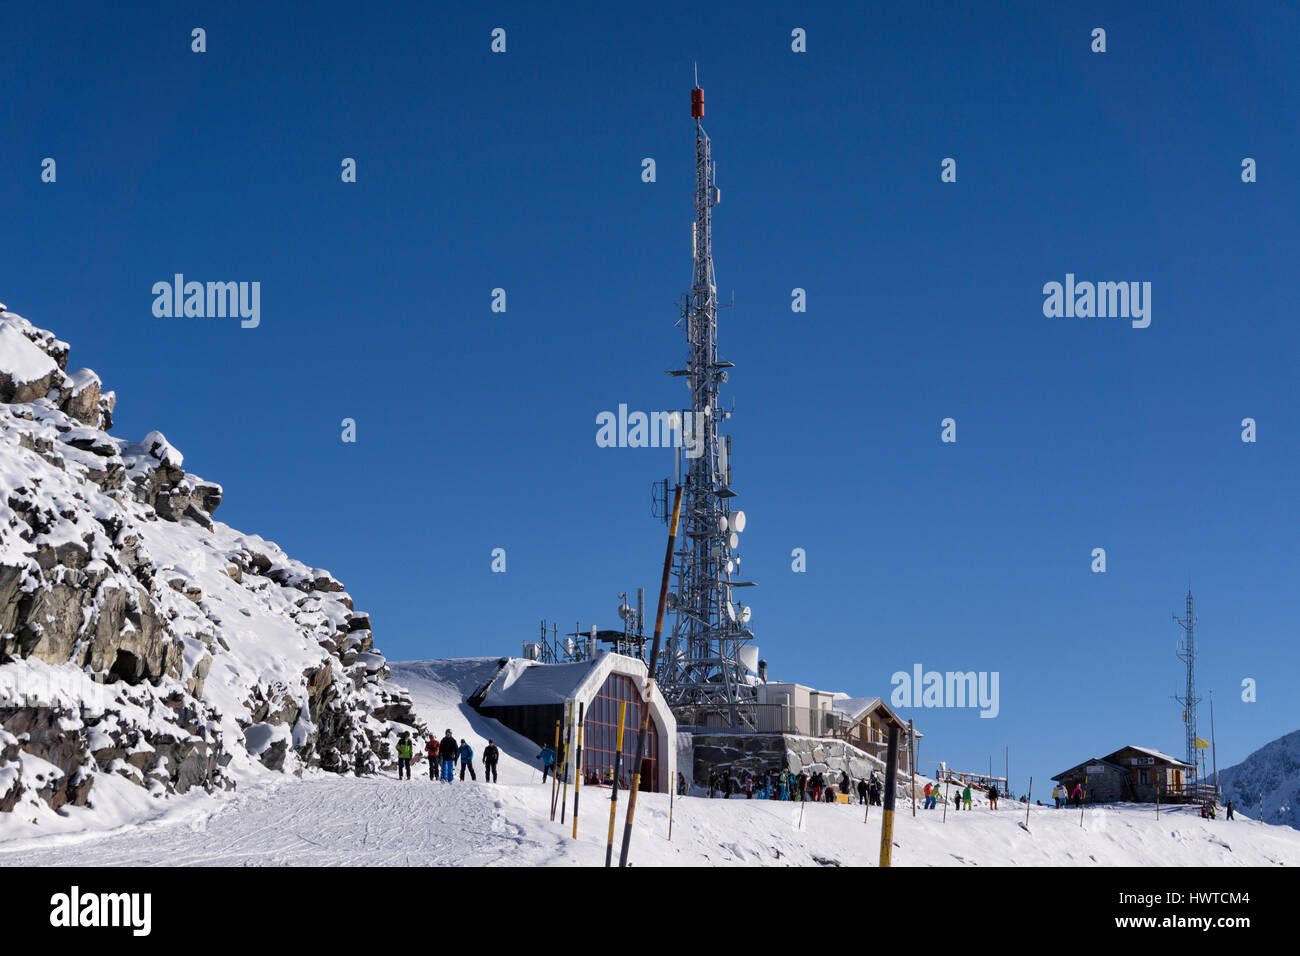 Tour de communications à la pointe de la masse au-dessus de la station de ski des Menuires, dans le domaine skiable des Trois Vallées en France Banque D'Images